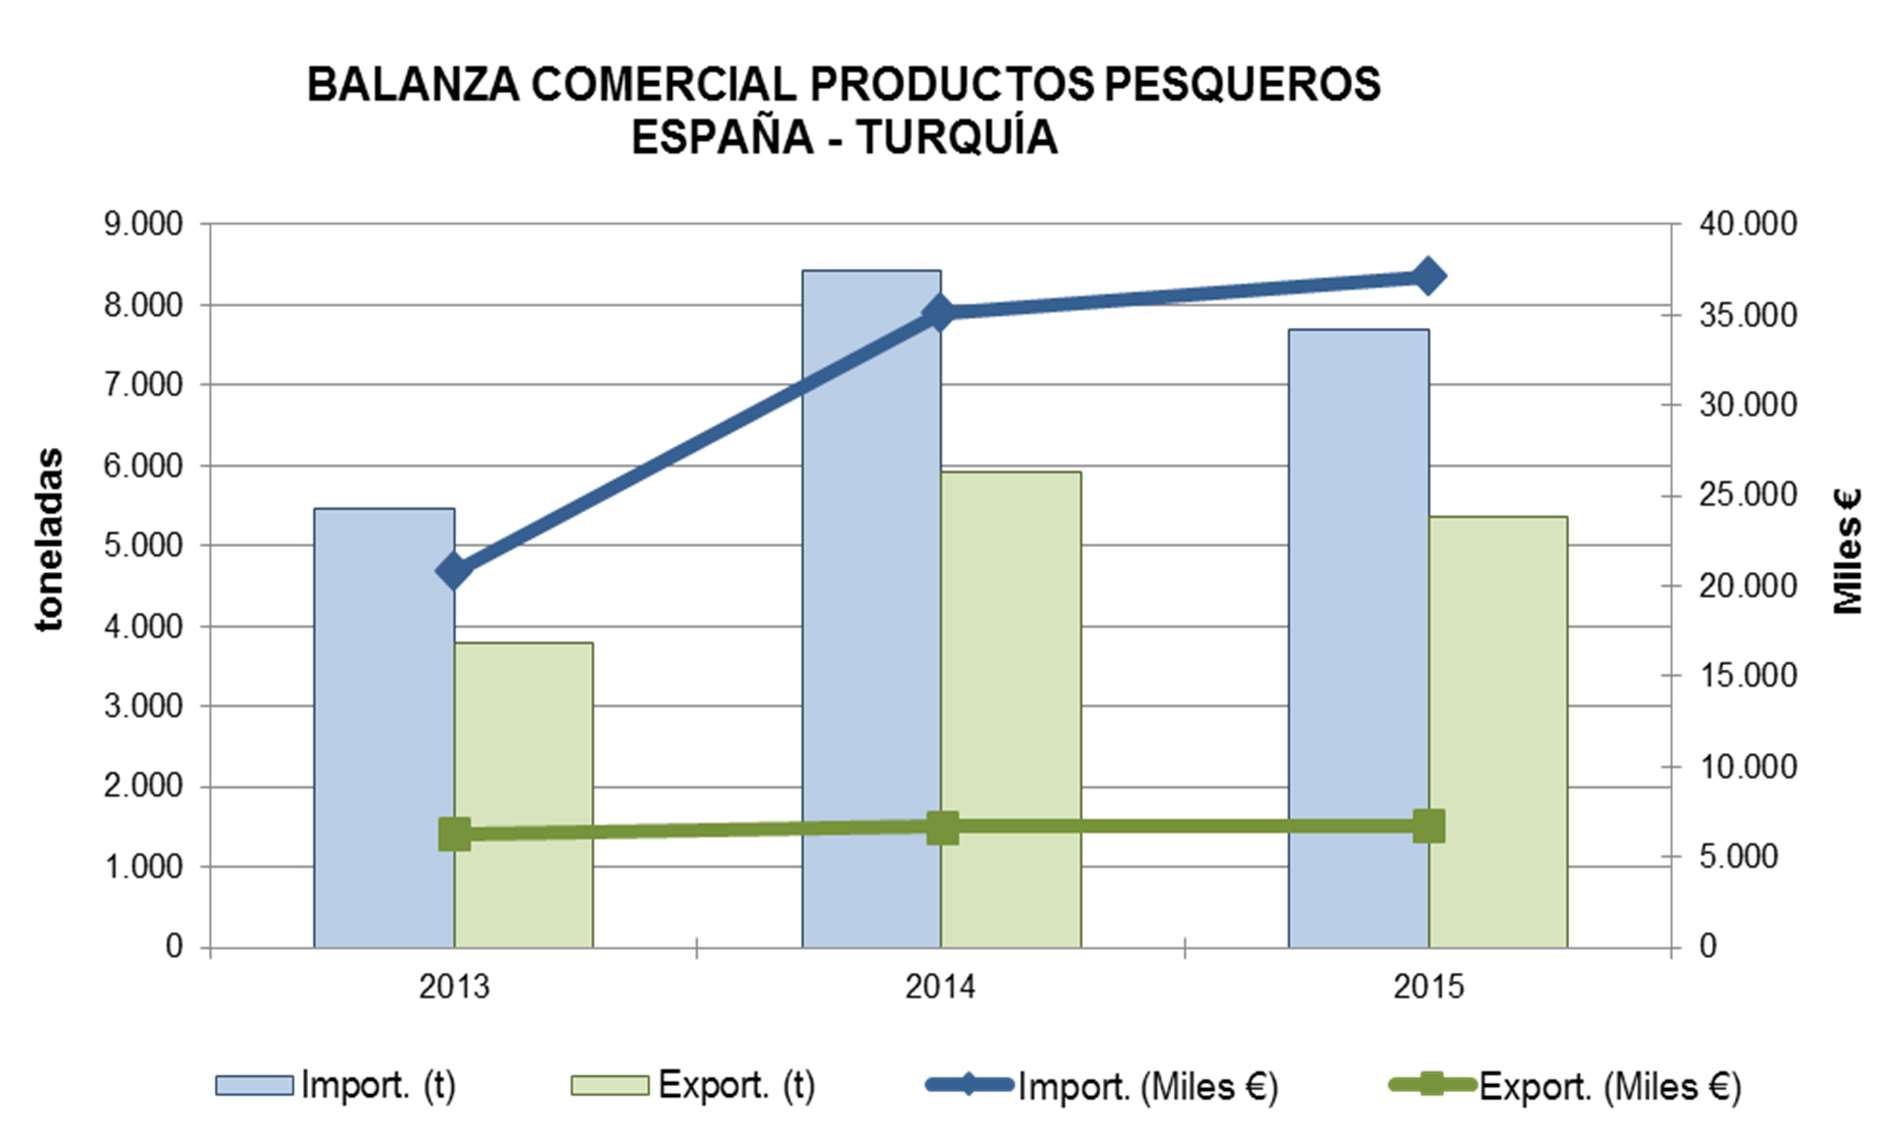 El principal producto exportado es la caballa congelada, con un volumen de 4.144 toneladas y un valor de 1,9 millones de euros, que corresponde al 24% de las importaciones totales.